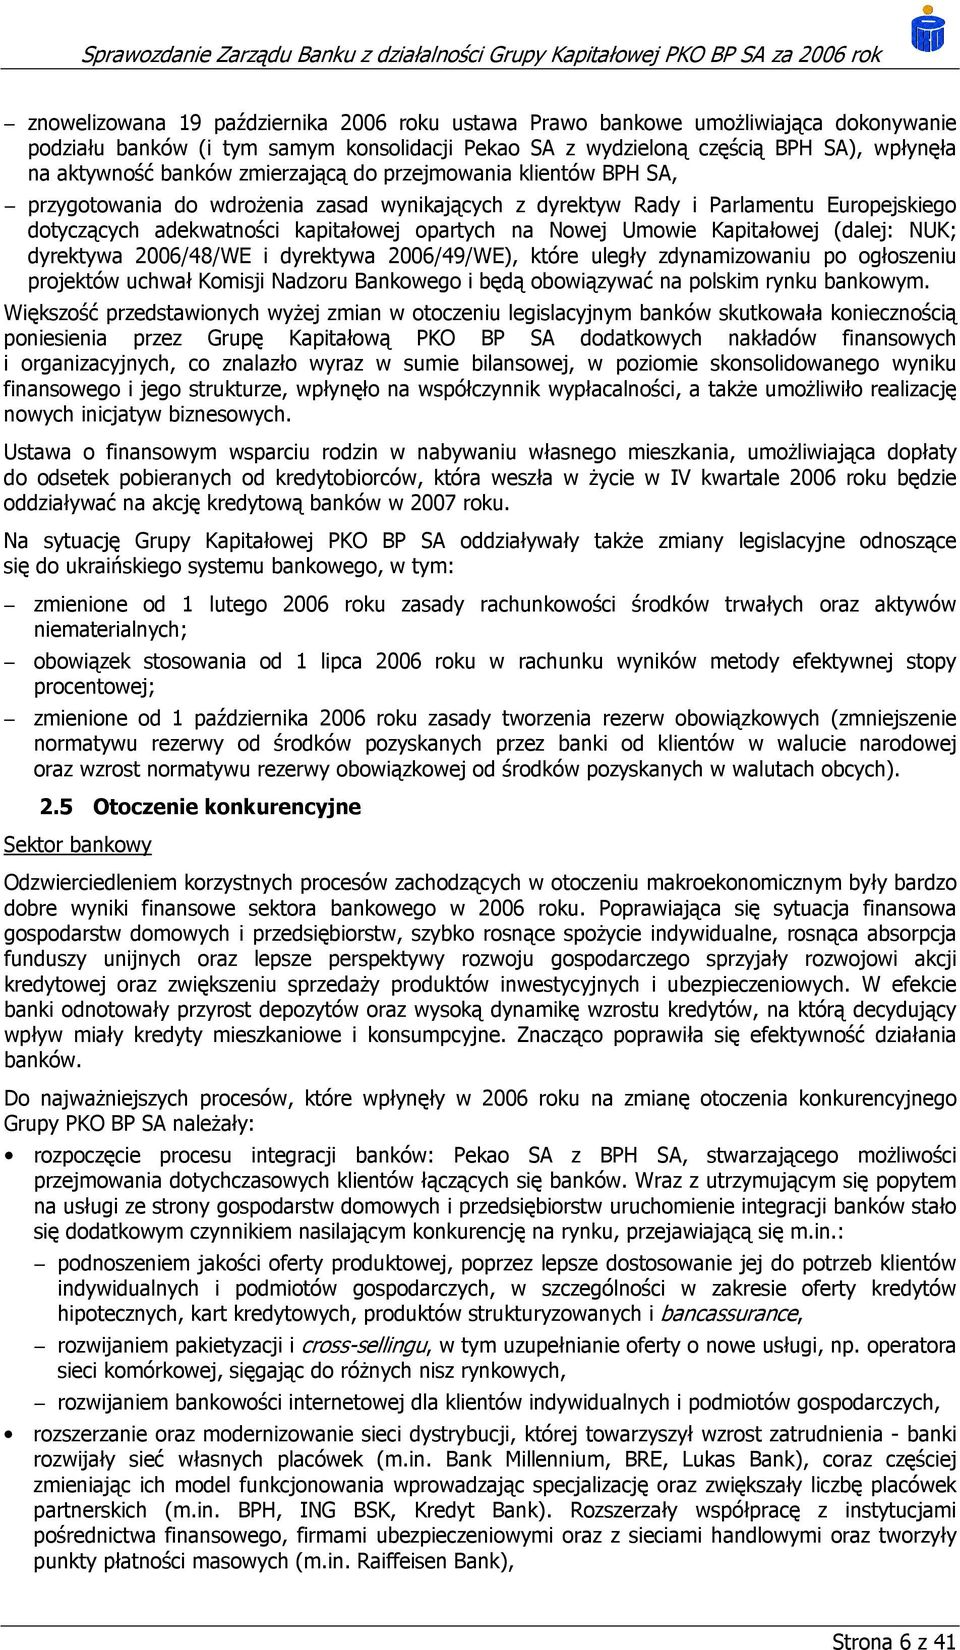 Kapitałowej (dalej: NUK; dyrektywa 2006/48/WE i dyrektywa 2006/49/WE), które uległy zdynamizowaniu po ogłoszeniu projektów uchwał Komisji Nadzoru Bankowego i będą obowiązywać na polskim rynku